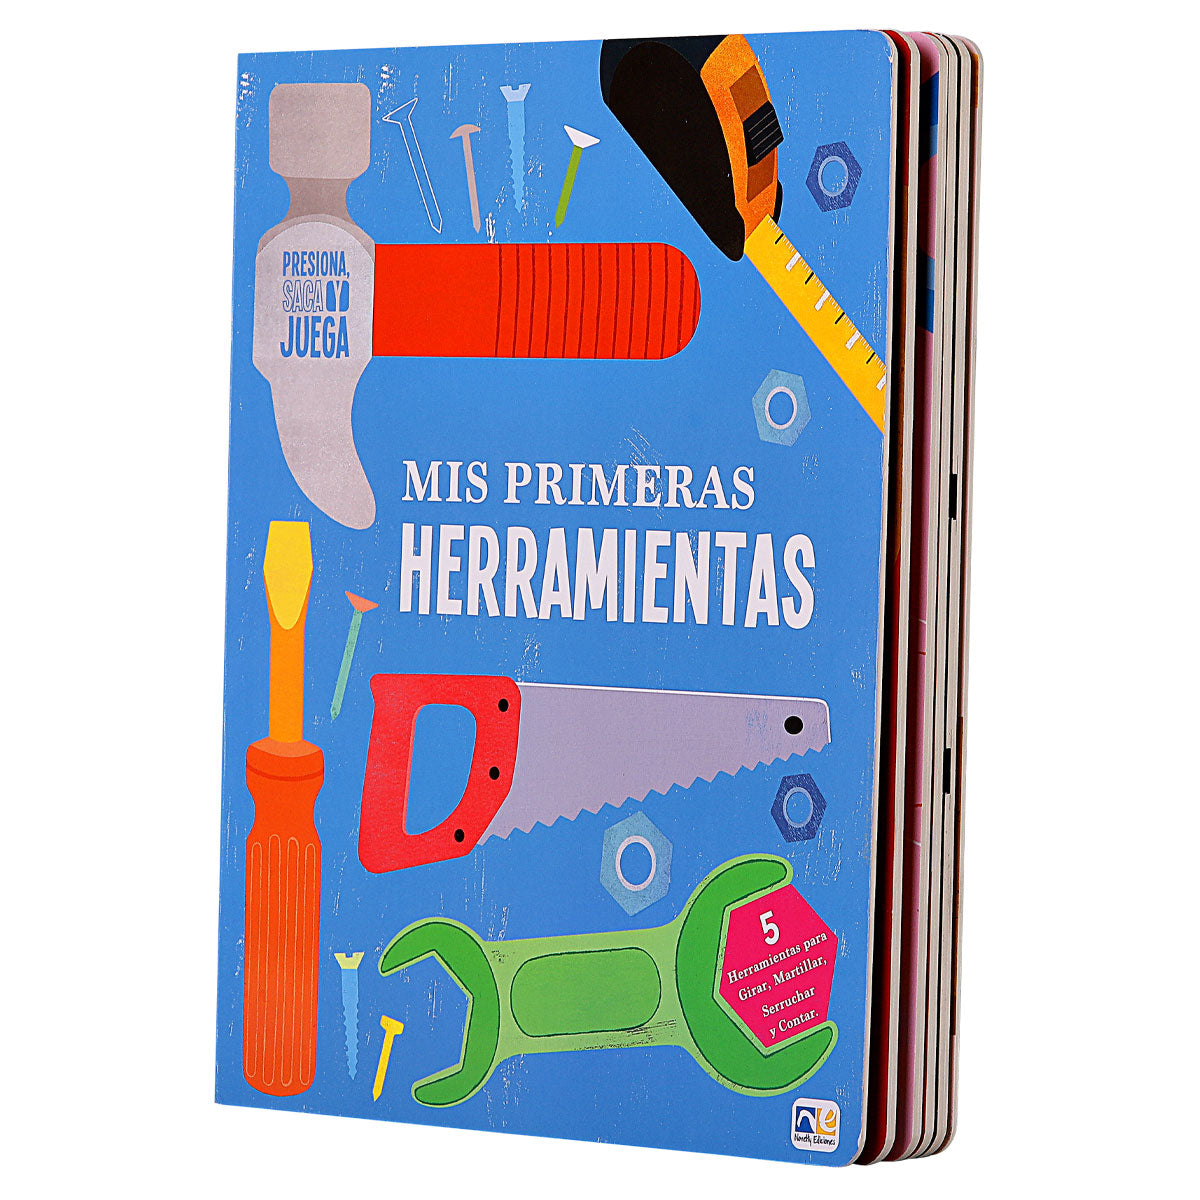 Novelty Ediciones, Libro didáctico, Mis Primeras Herramientas, Pasta Dura, Libros Infantiles, Preescolar, Ayuda en Motricidad